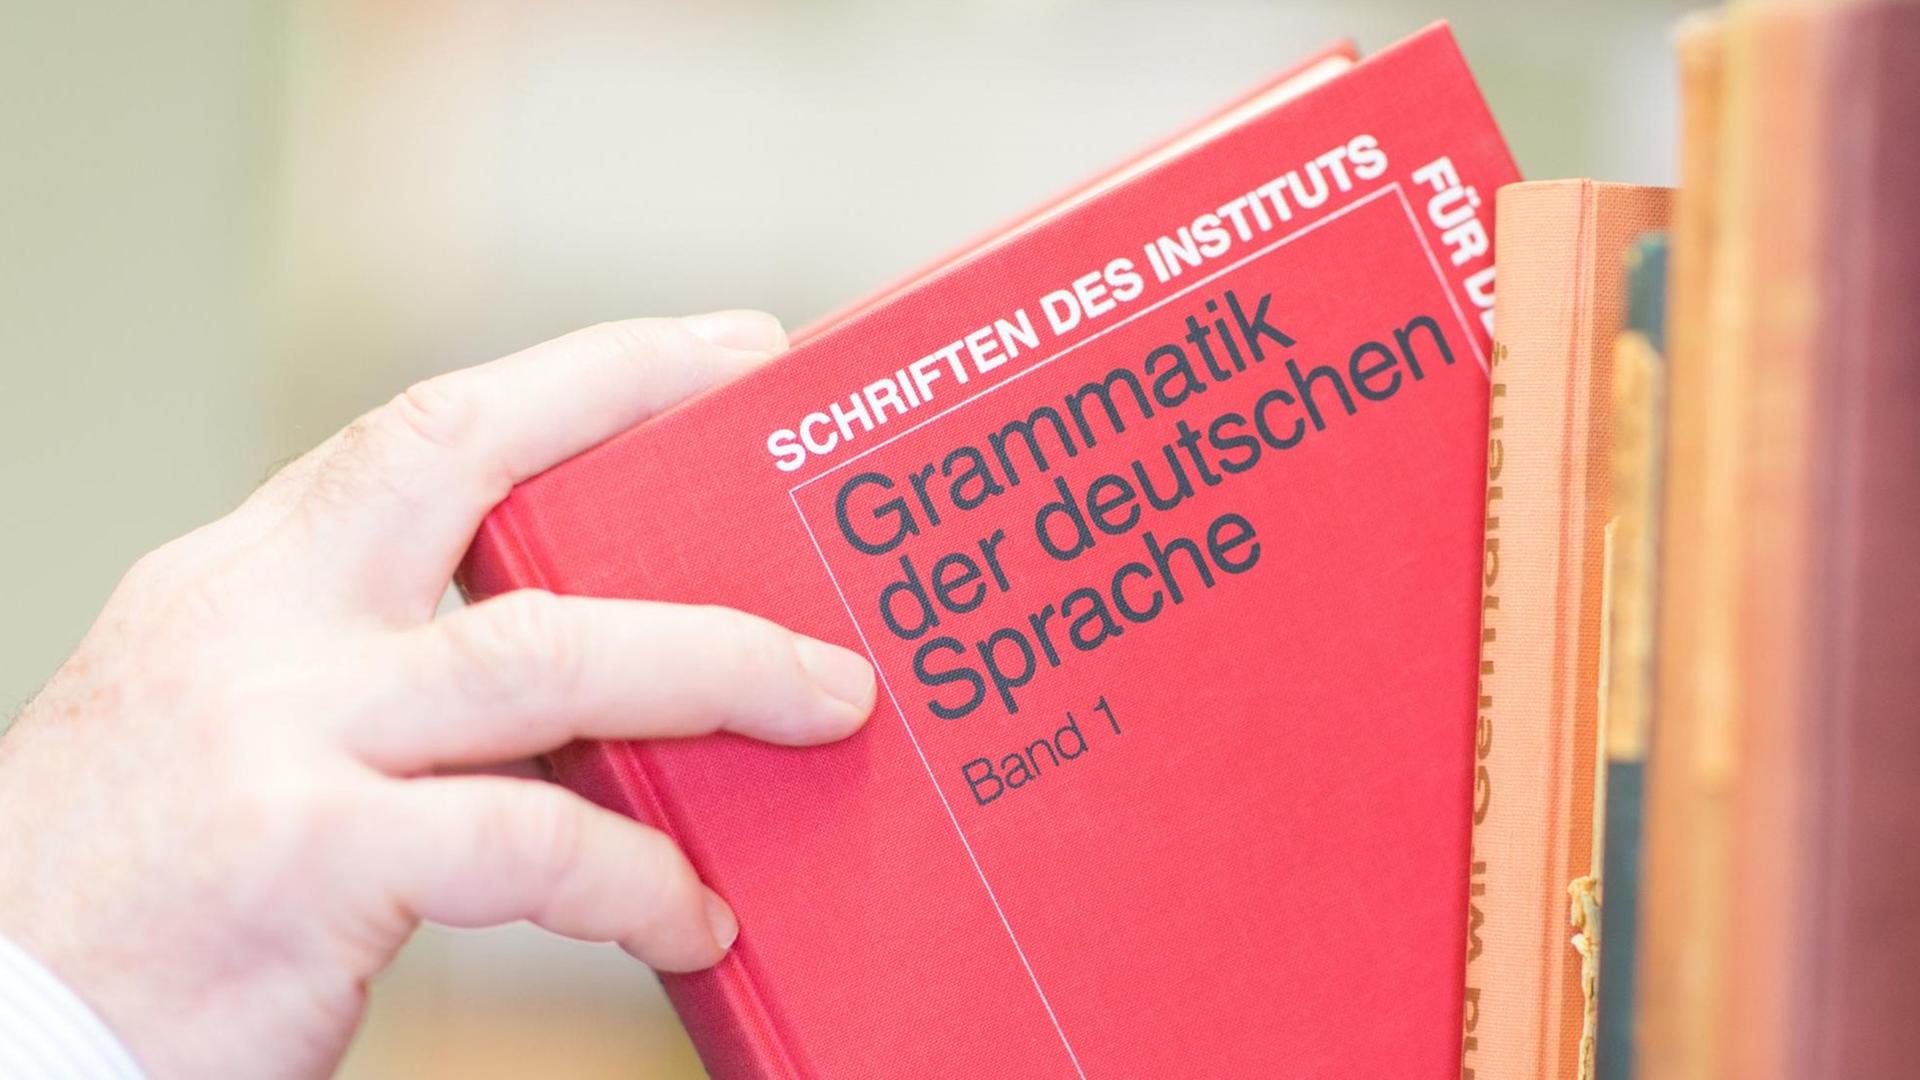 Ein Buch mit der Aufschrift "Grammatik der deutschen Sprache" wird aus einem Bücherregal genommen